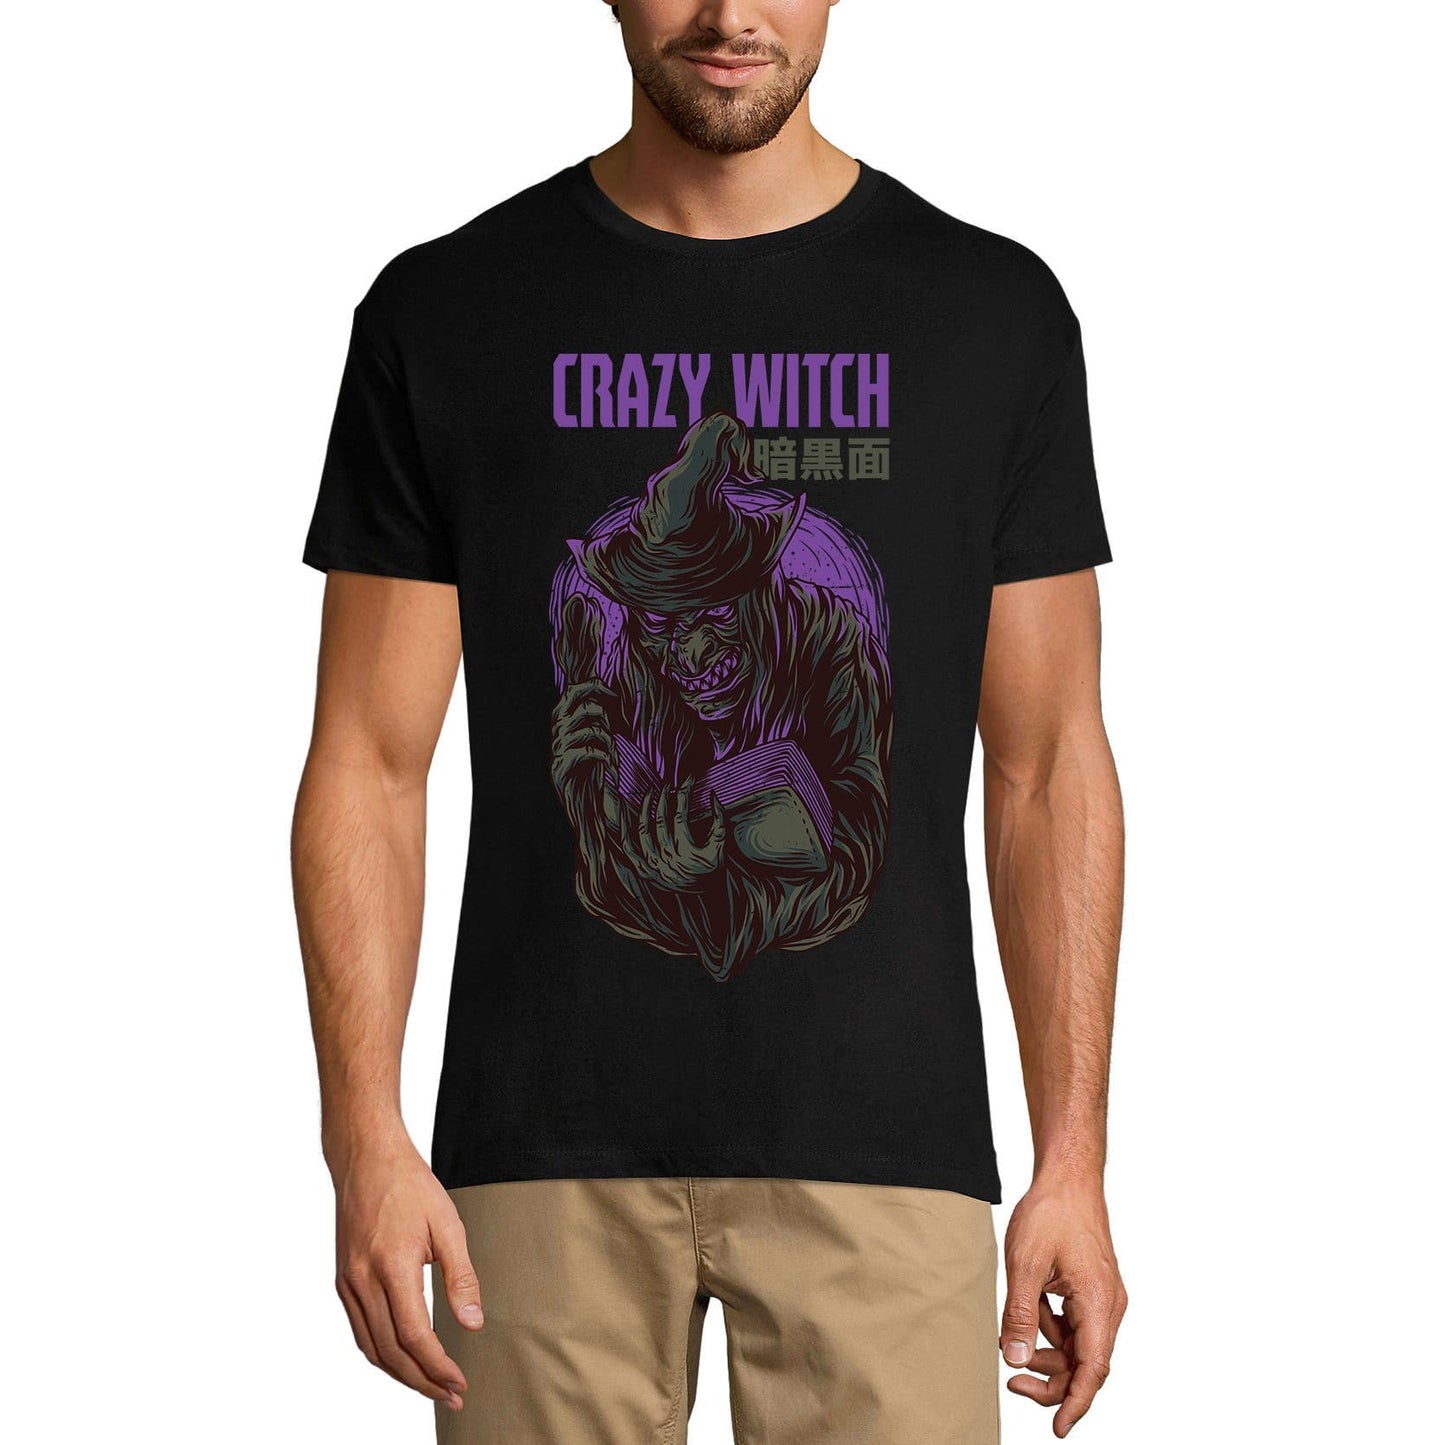 ULTRABASIC Herren-Neuheits-T-Shirt Crazy Witch – Gruseliges Halloween-Gothic-T-Shirt